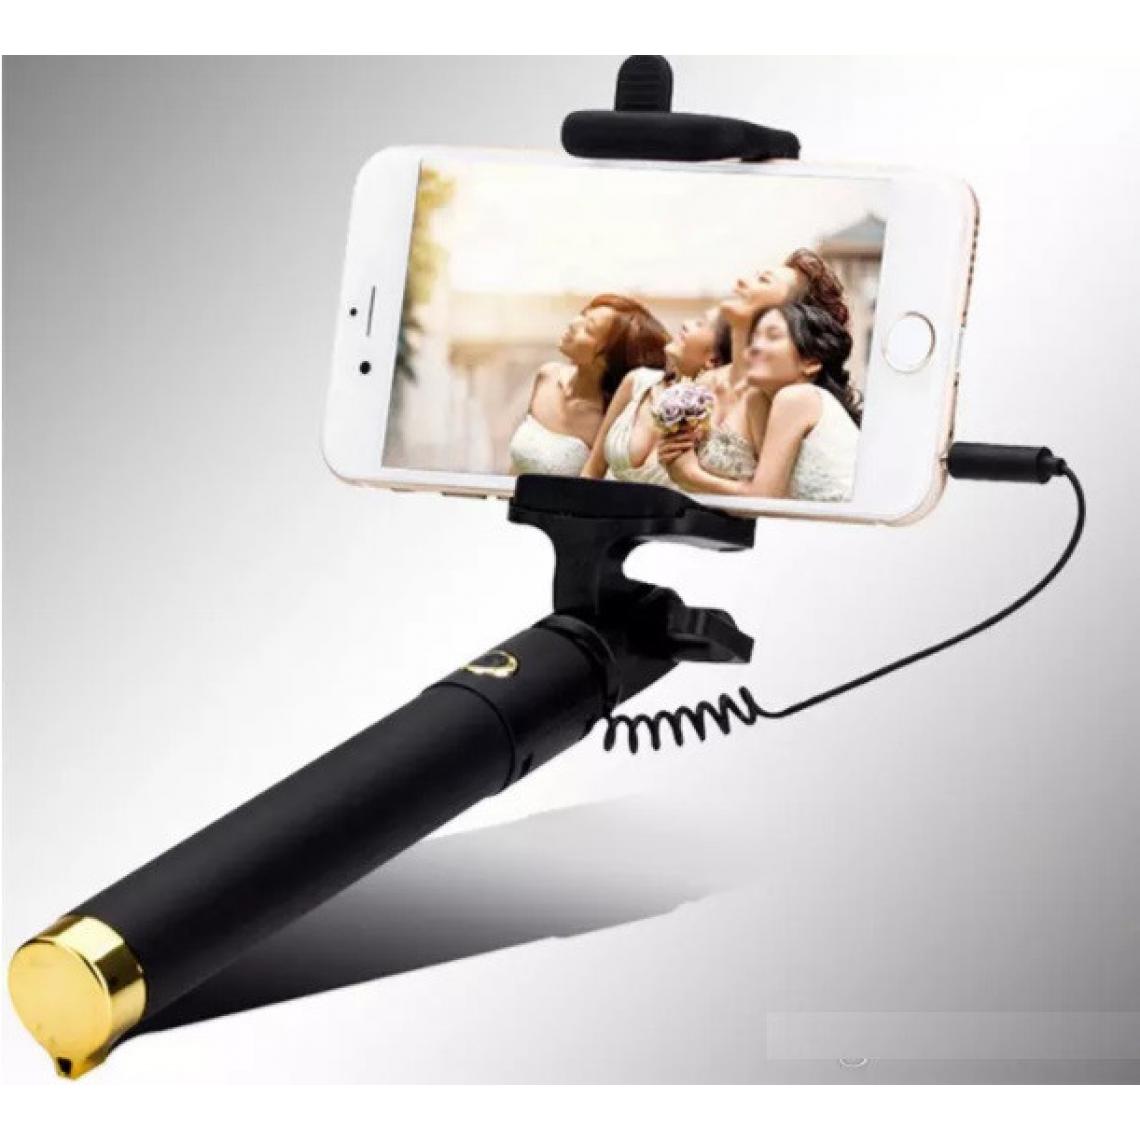 Shot - Perche Selfie Metal pour WIKO Y80 Smartphone avec Cable Jack Selfie Stick Android IOS Reglable Bouton Photo (OR) - Autres accessoires smartphone